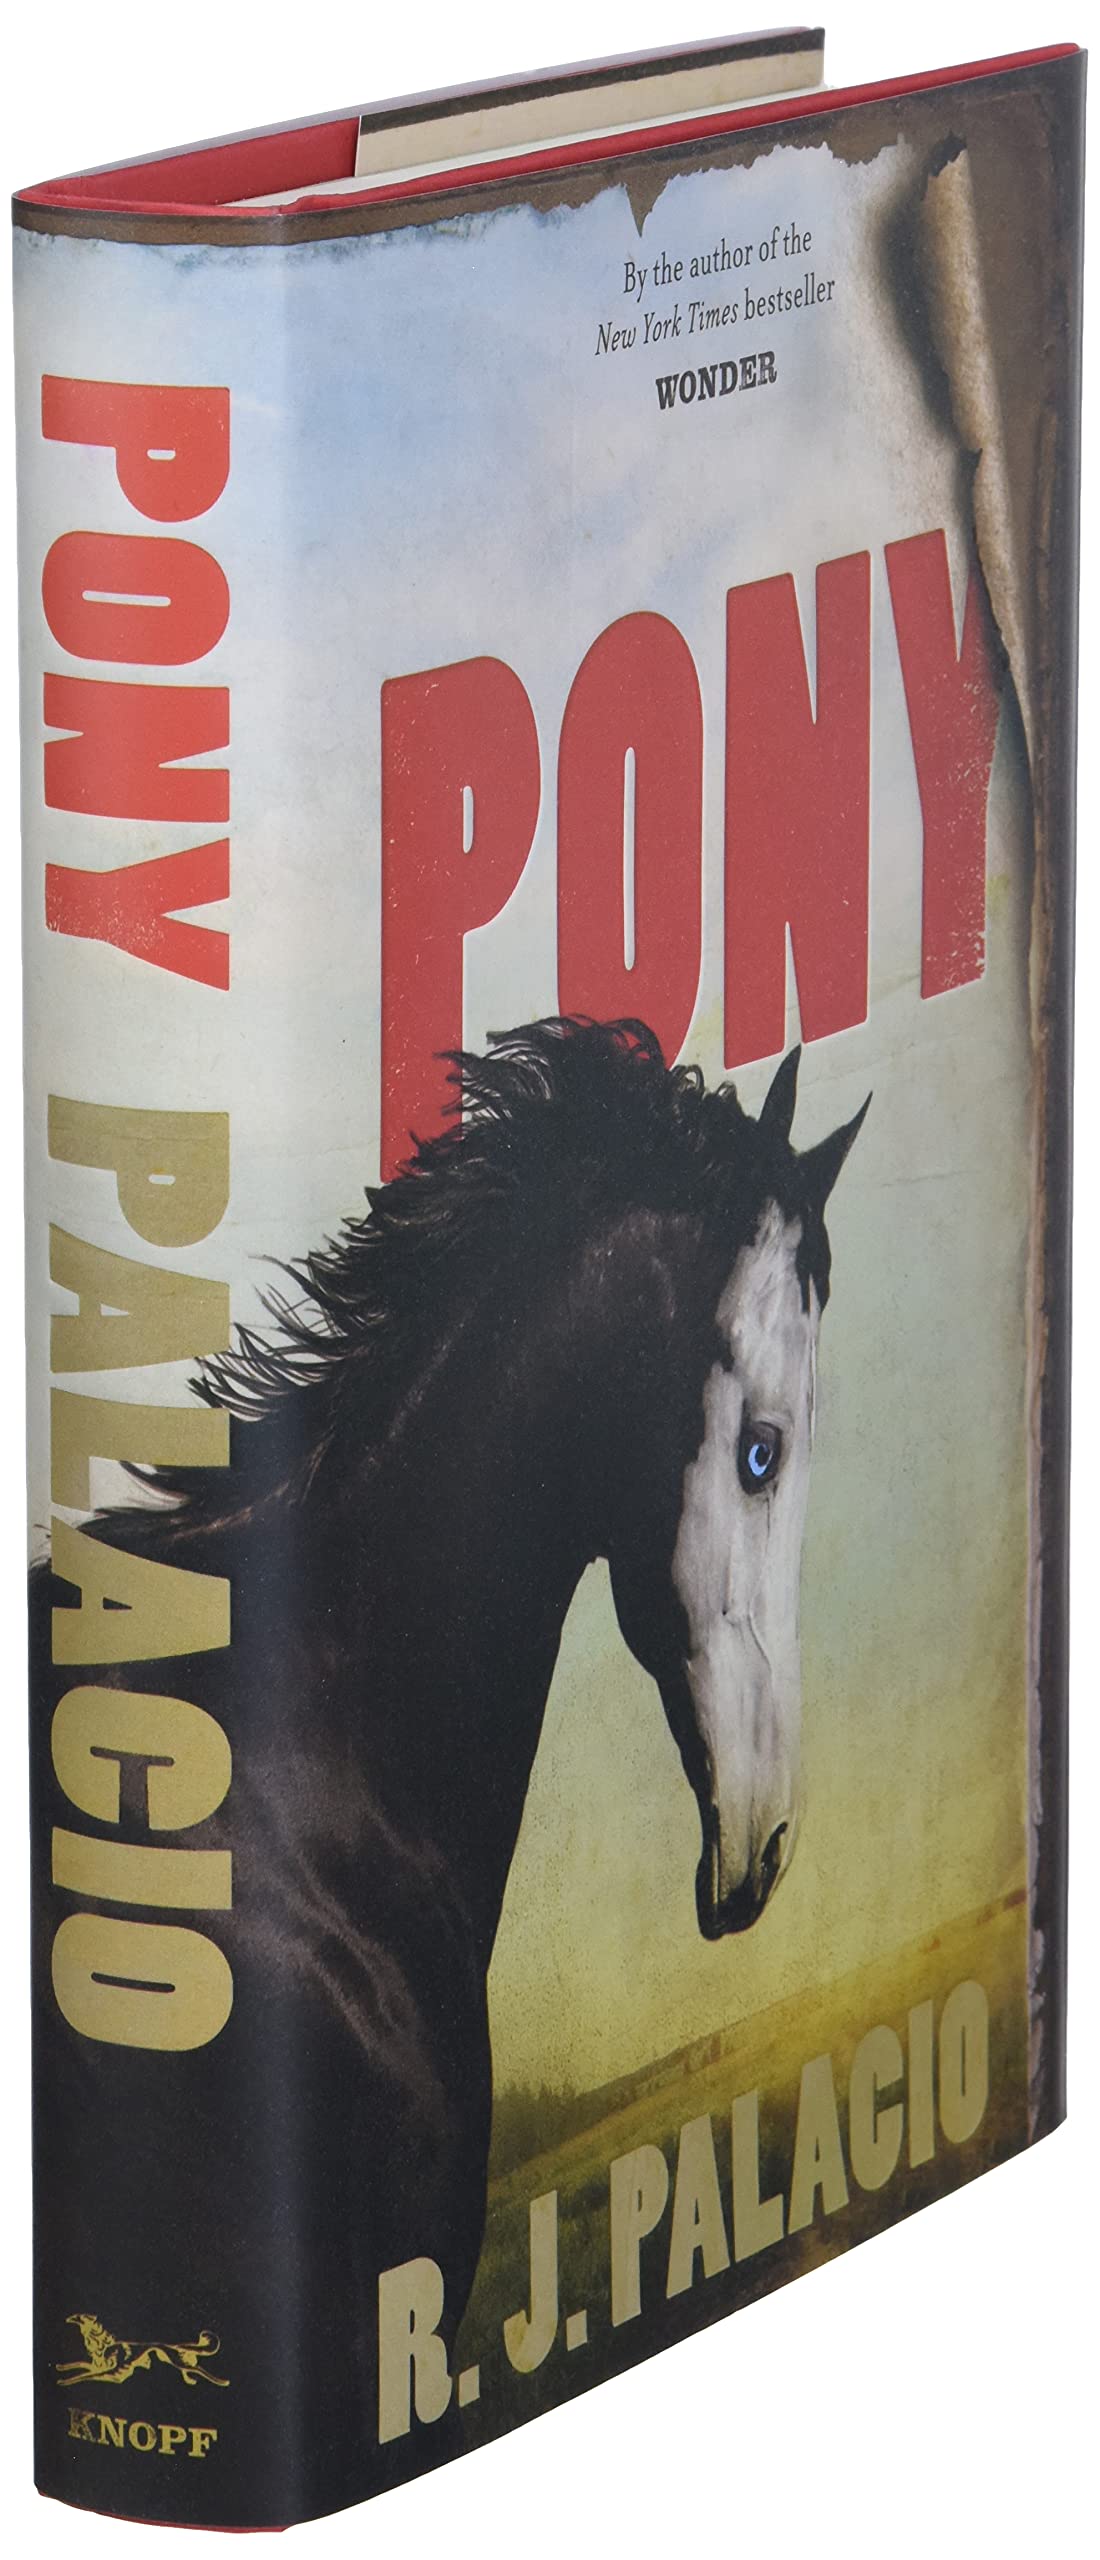 jaramillo-pony-book.jpg